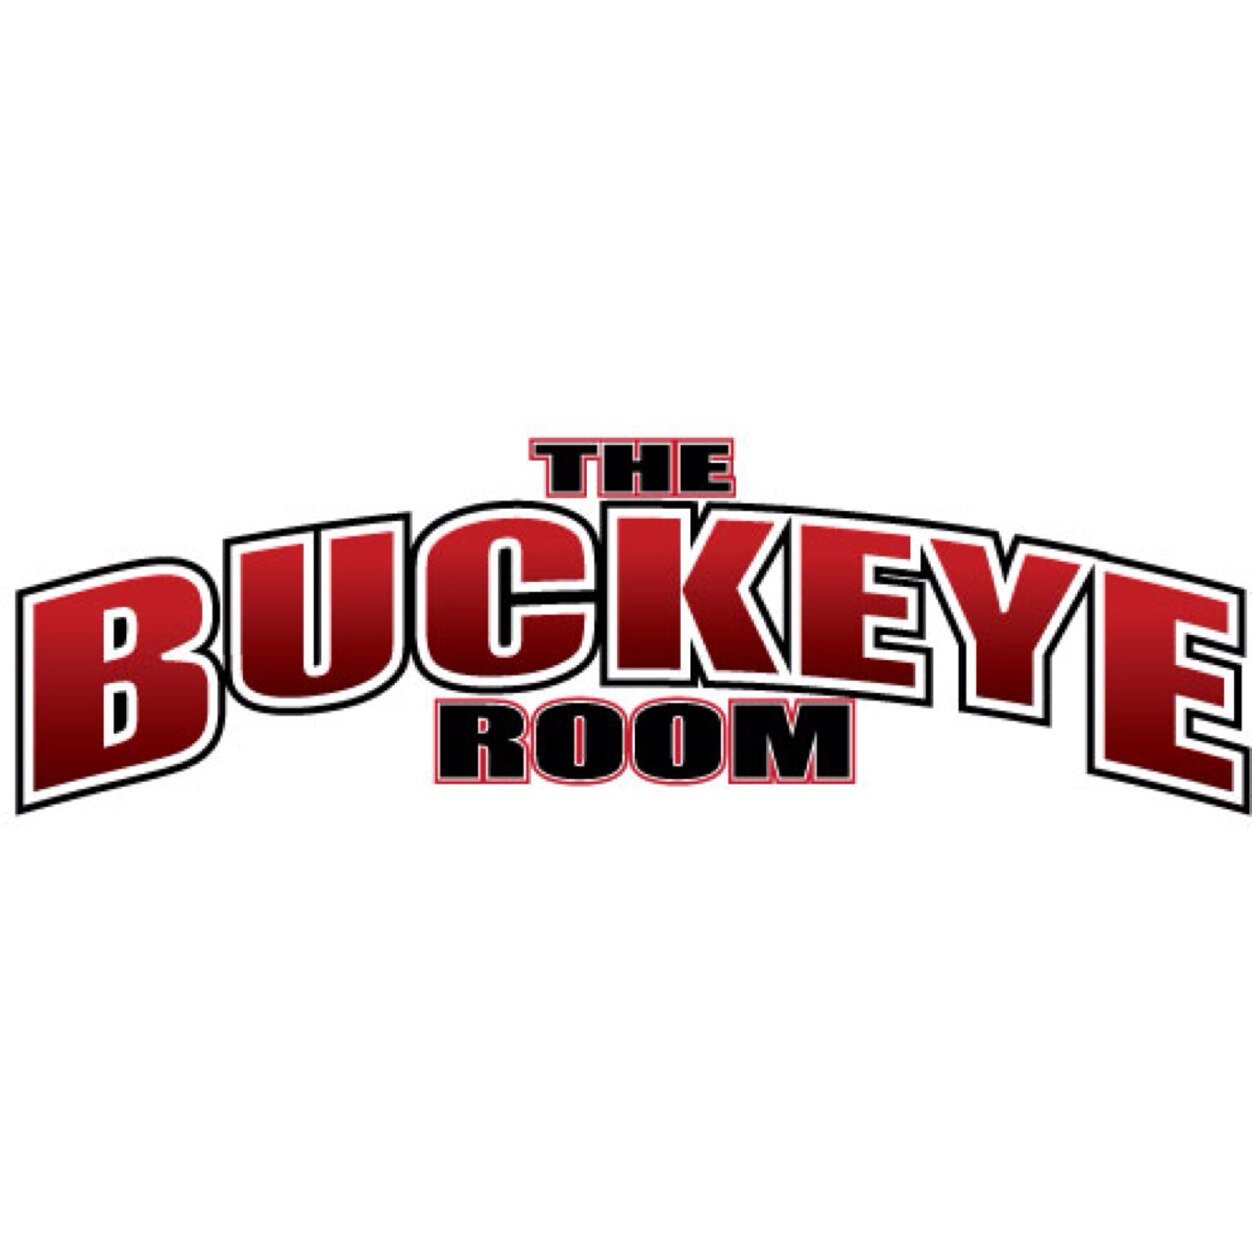 The Buckeye Room Buckeyeroom Twitter